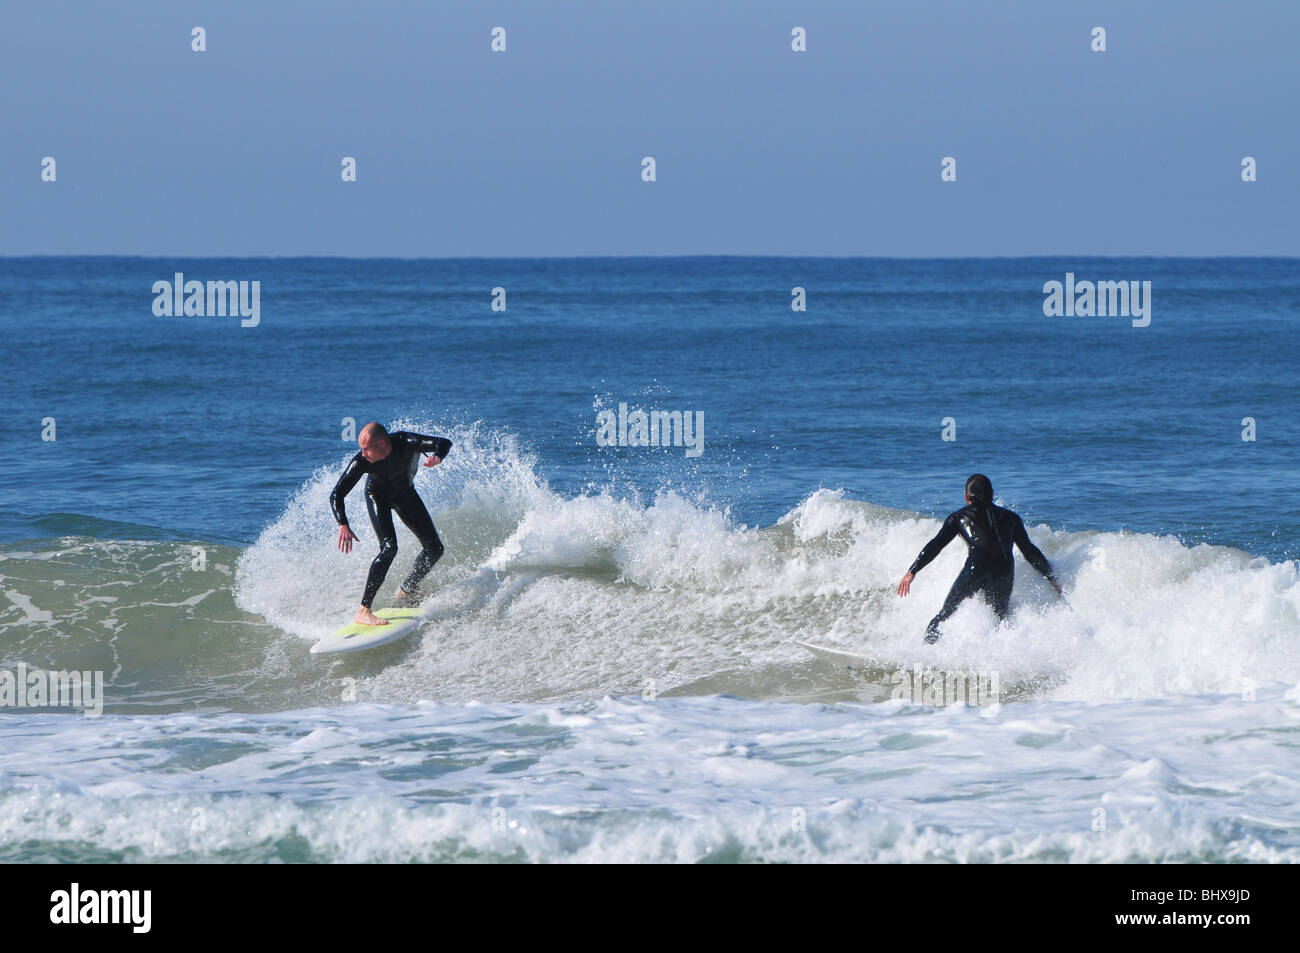 Israel, Haifa, Wintervergnügen auf der Strand-Surfer reiten eine Welle Stockfoto